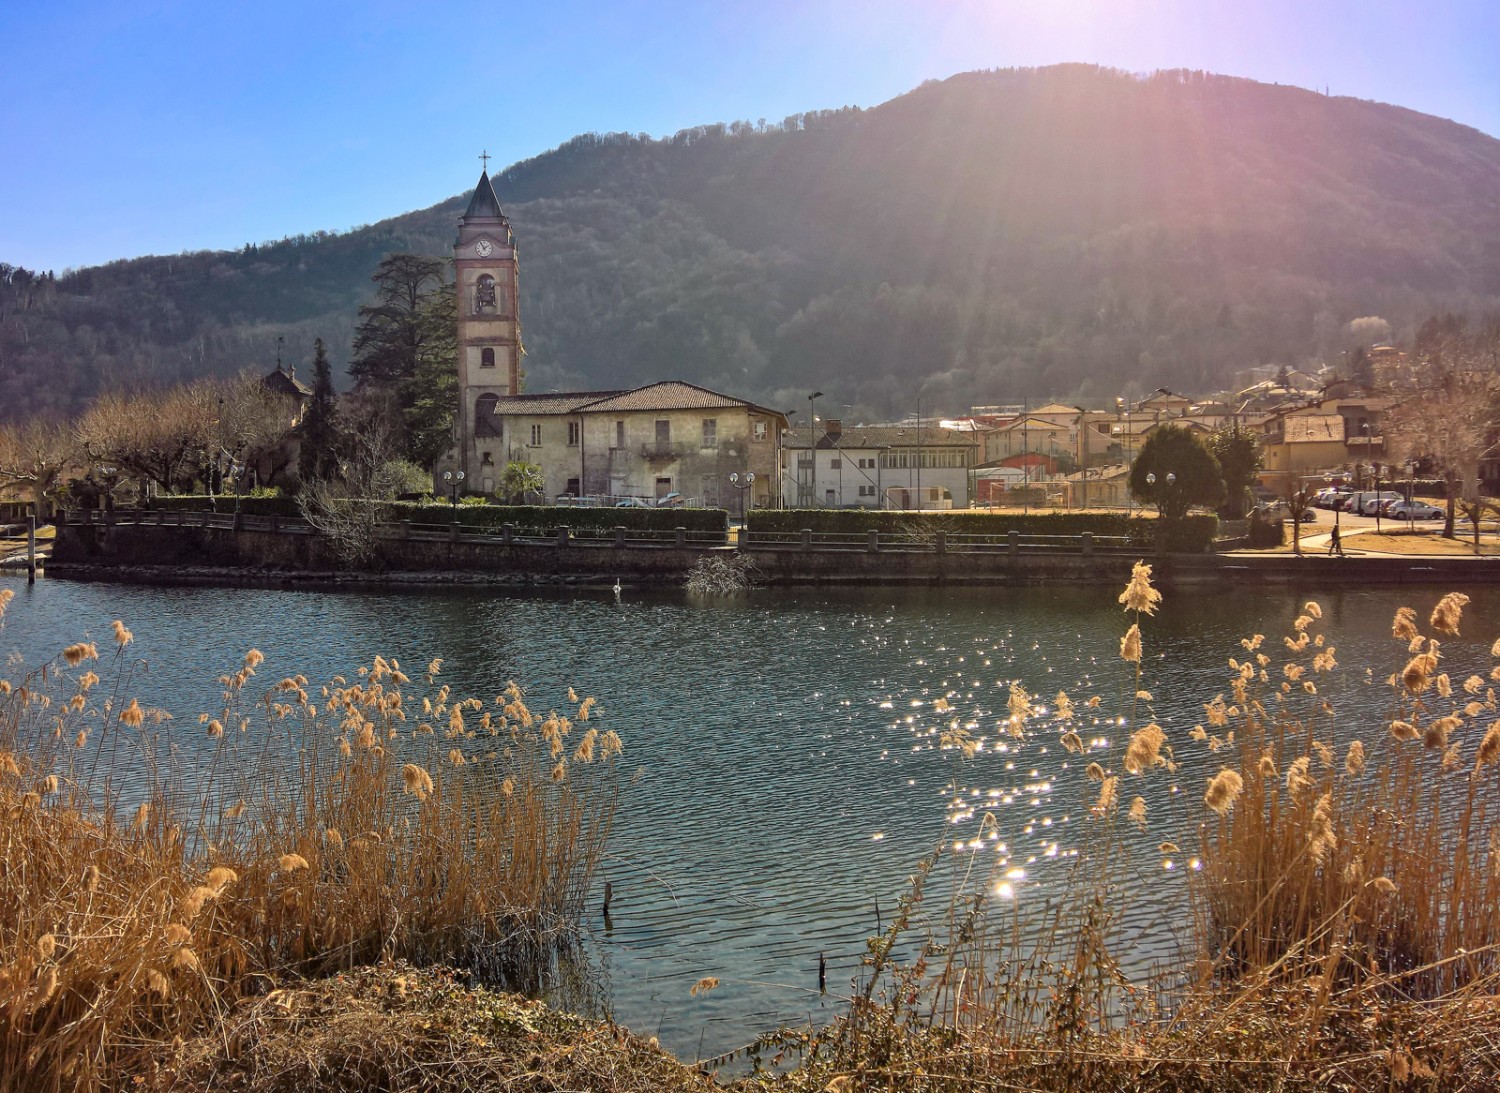 Qui l'Italia è a due passi: da Torrazza si vede, attraverso lo stretto braccio del Lago di Lugano, la chiesa di Lavena. Immagine: Andreas Staeger